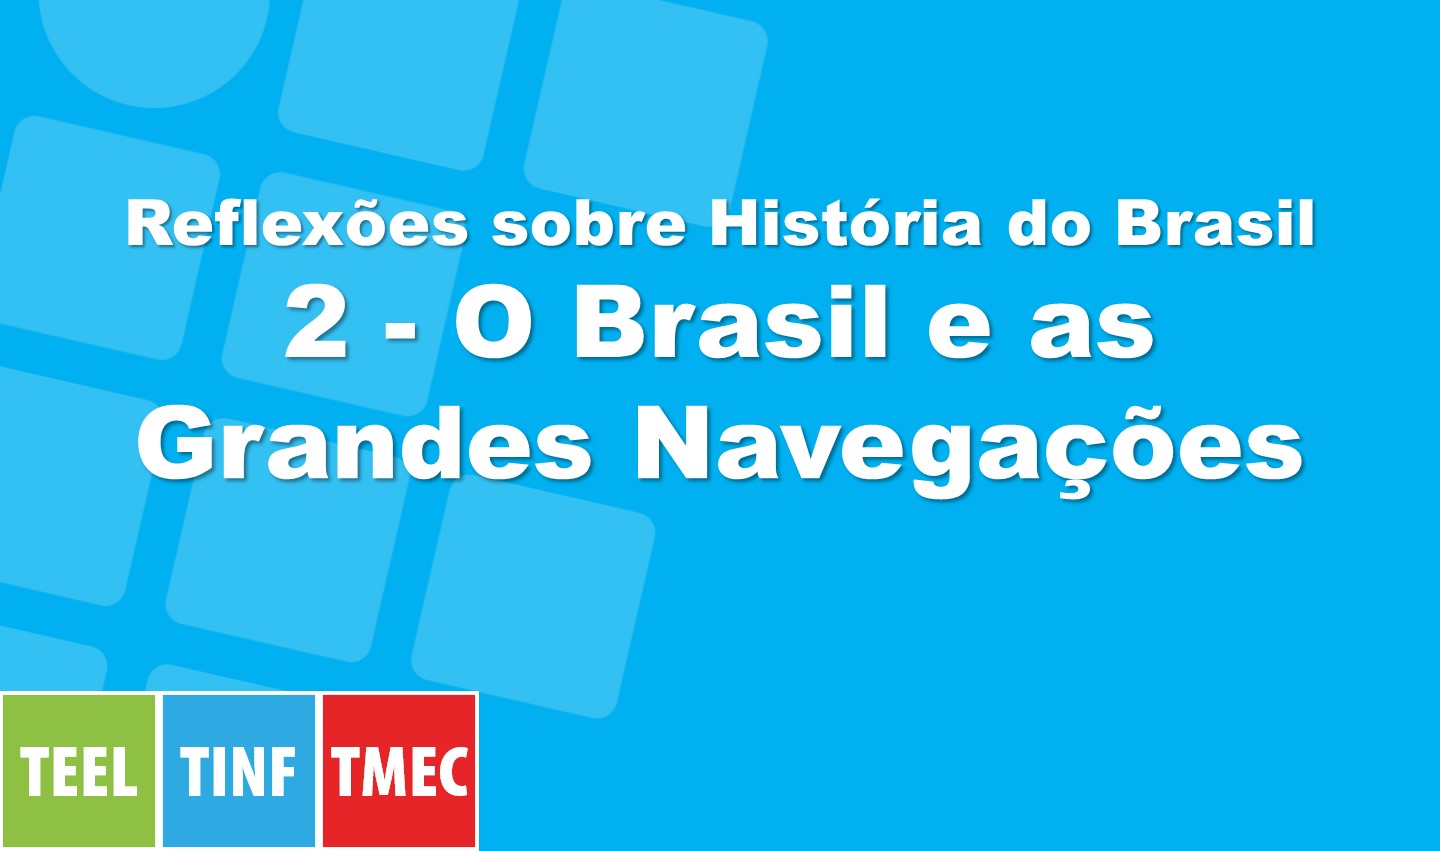 Reflexões sobre História do Brasil 2 - O Brasil e as Grandes Navegações